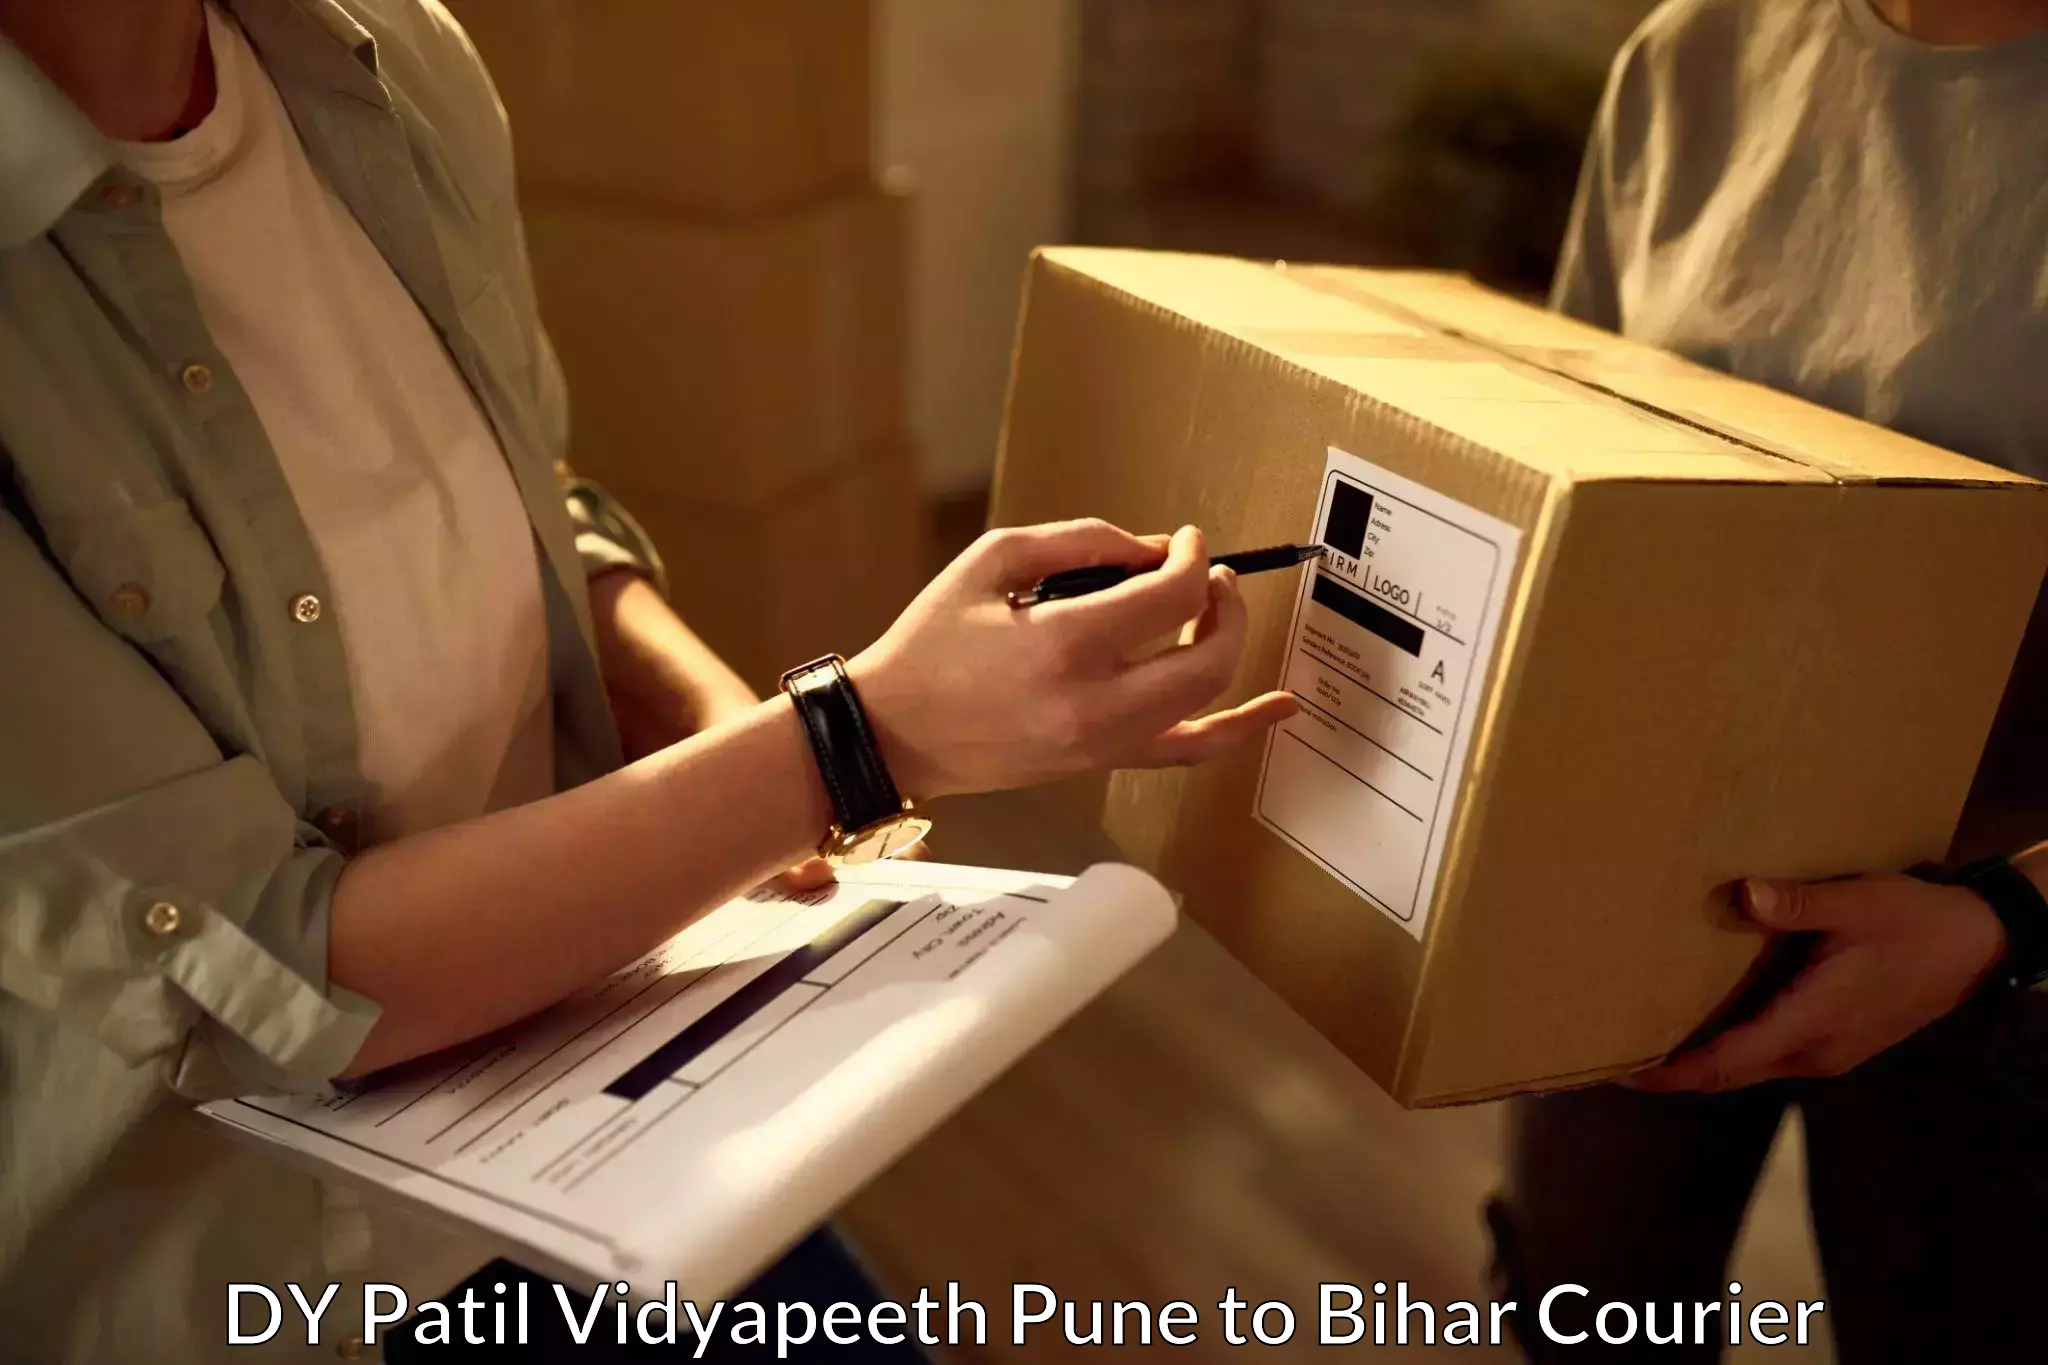 Courier service comparison DY Patil Vidyapeeth Pune to Aurai